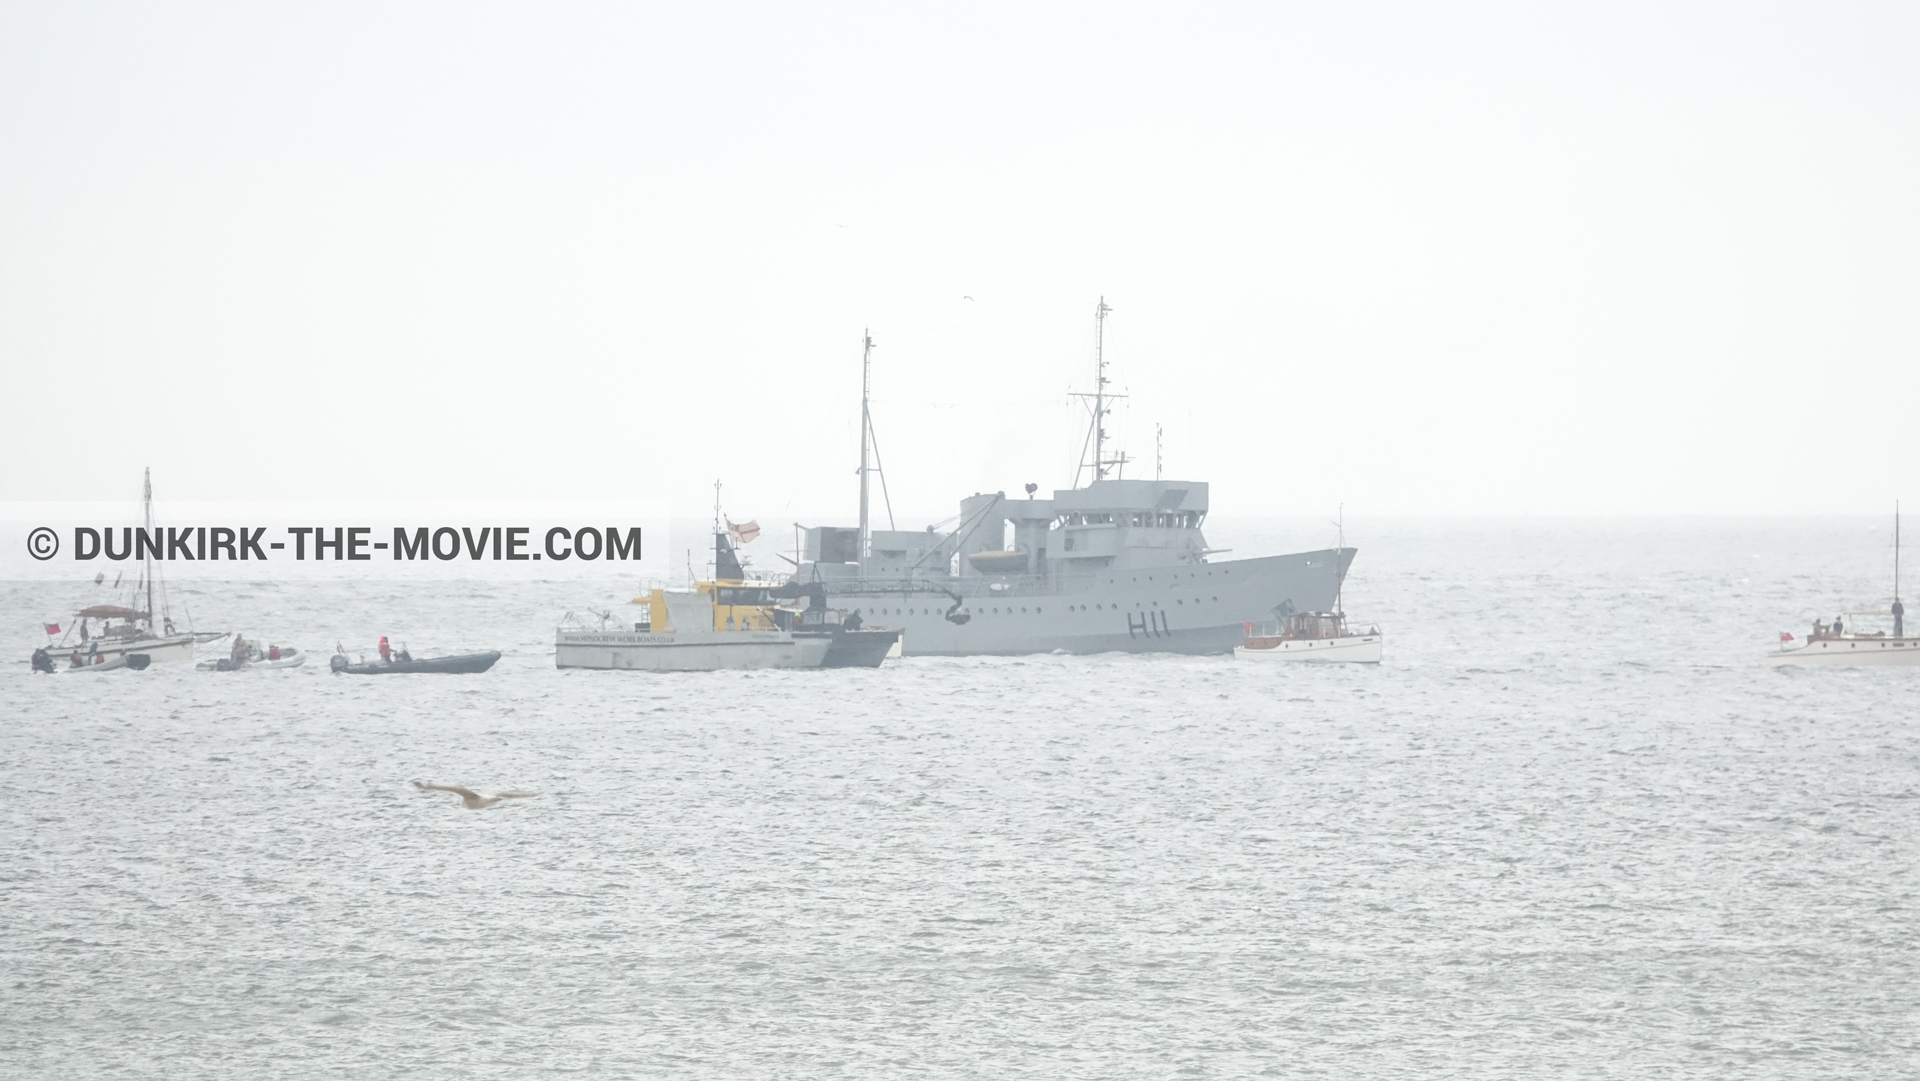 Fotos con barco, H11 - MLV Castor, Ocean Wind 4,  durante el rodaje de la película Dunkerque de Nolan